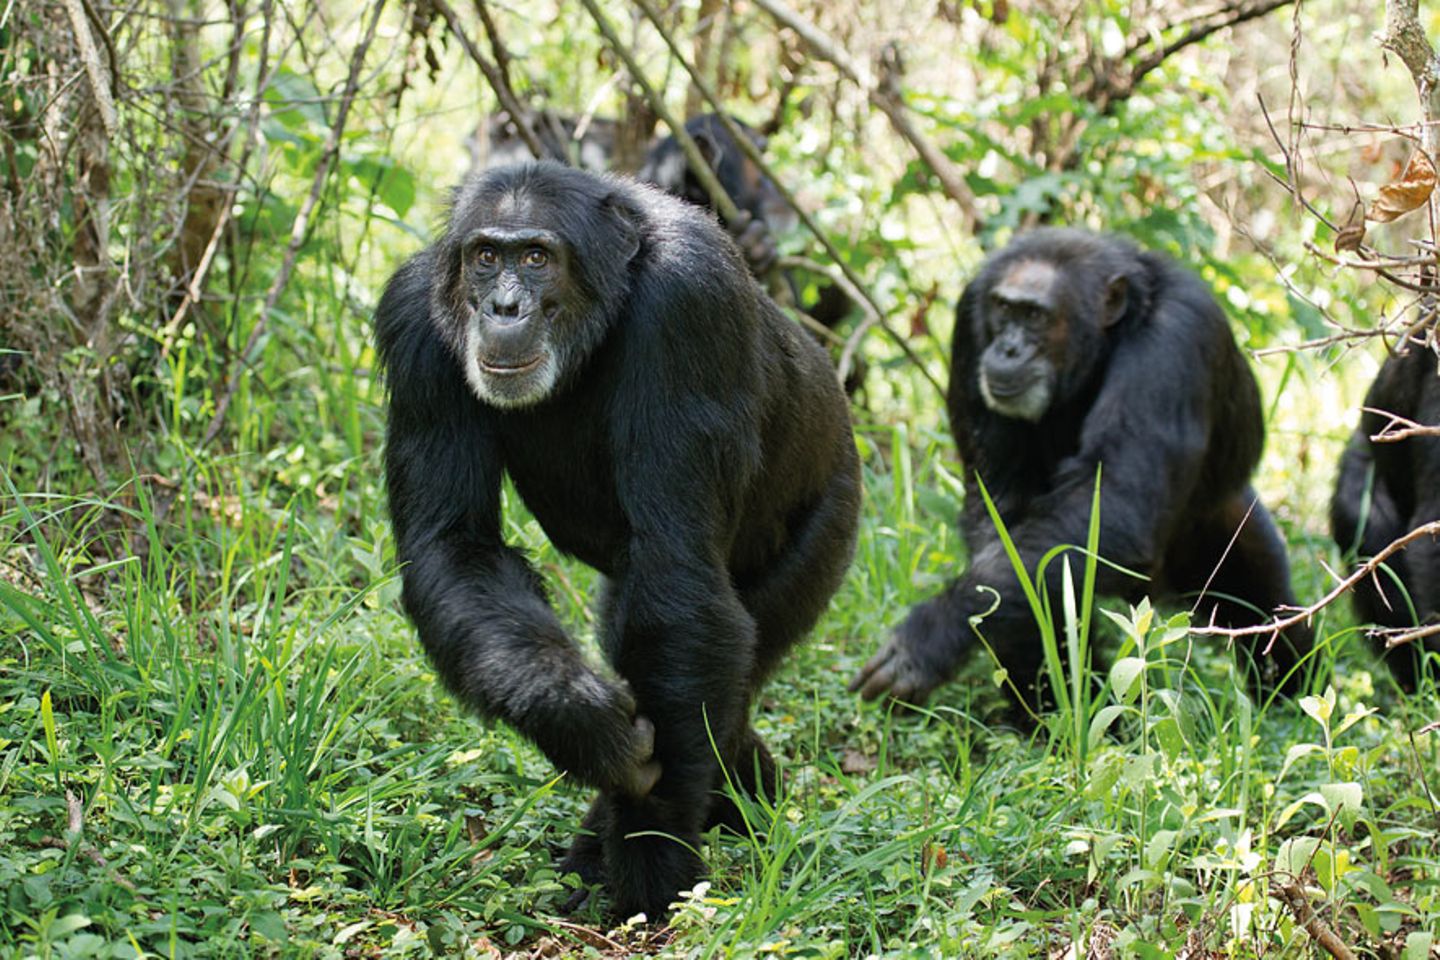 INTERVIEW: Kinostart: "Schimpansen" - Bild 12